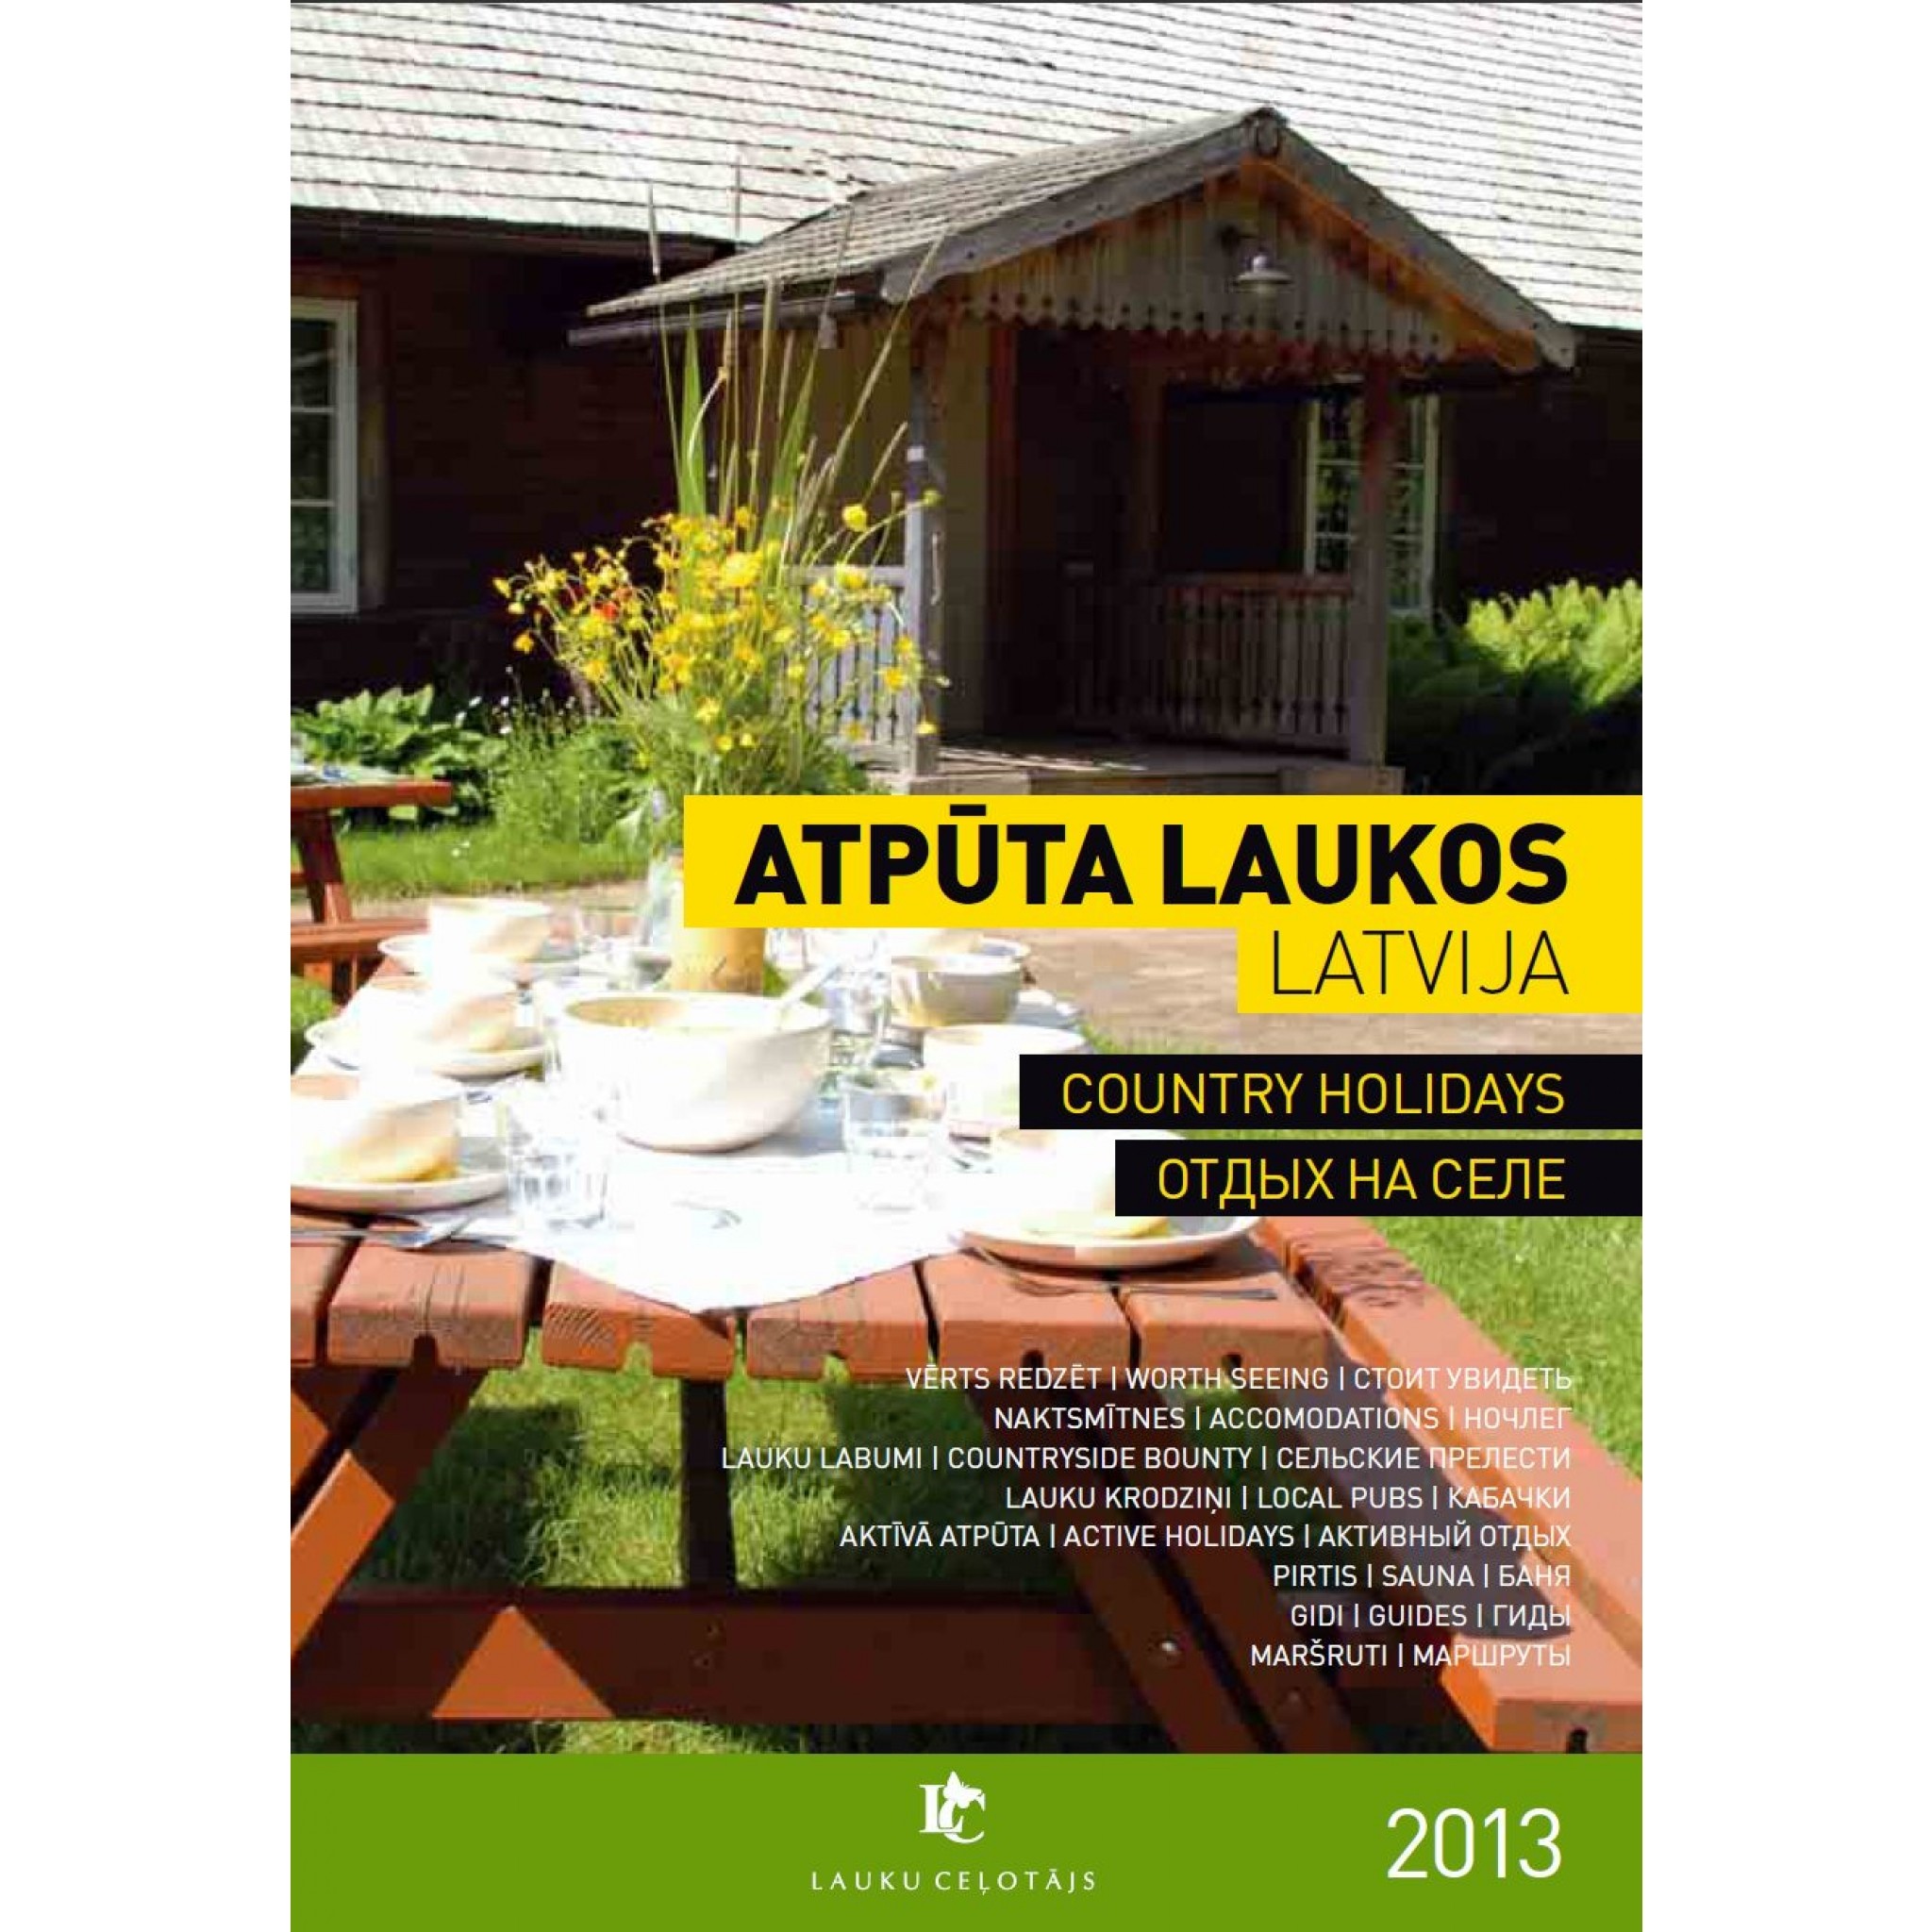 Iznācis „Lauku ceļotāja” jaunais katalogs "Atpūta laukos 2013. Latvija"